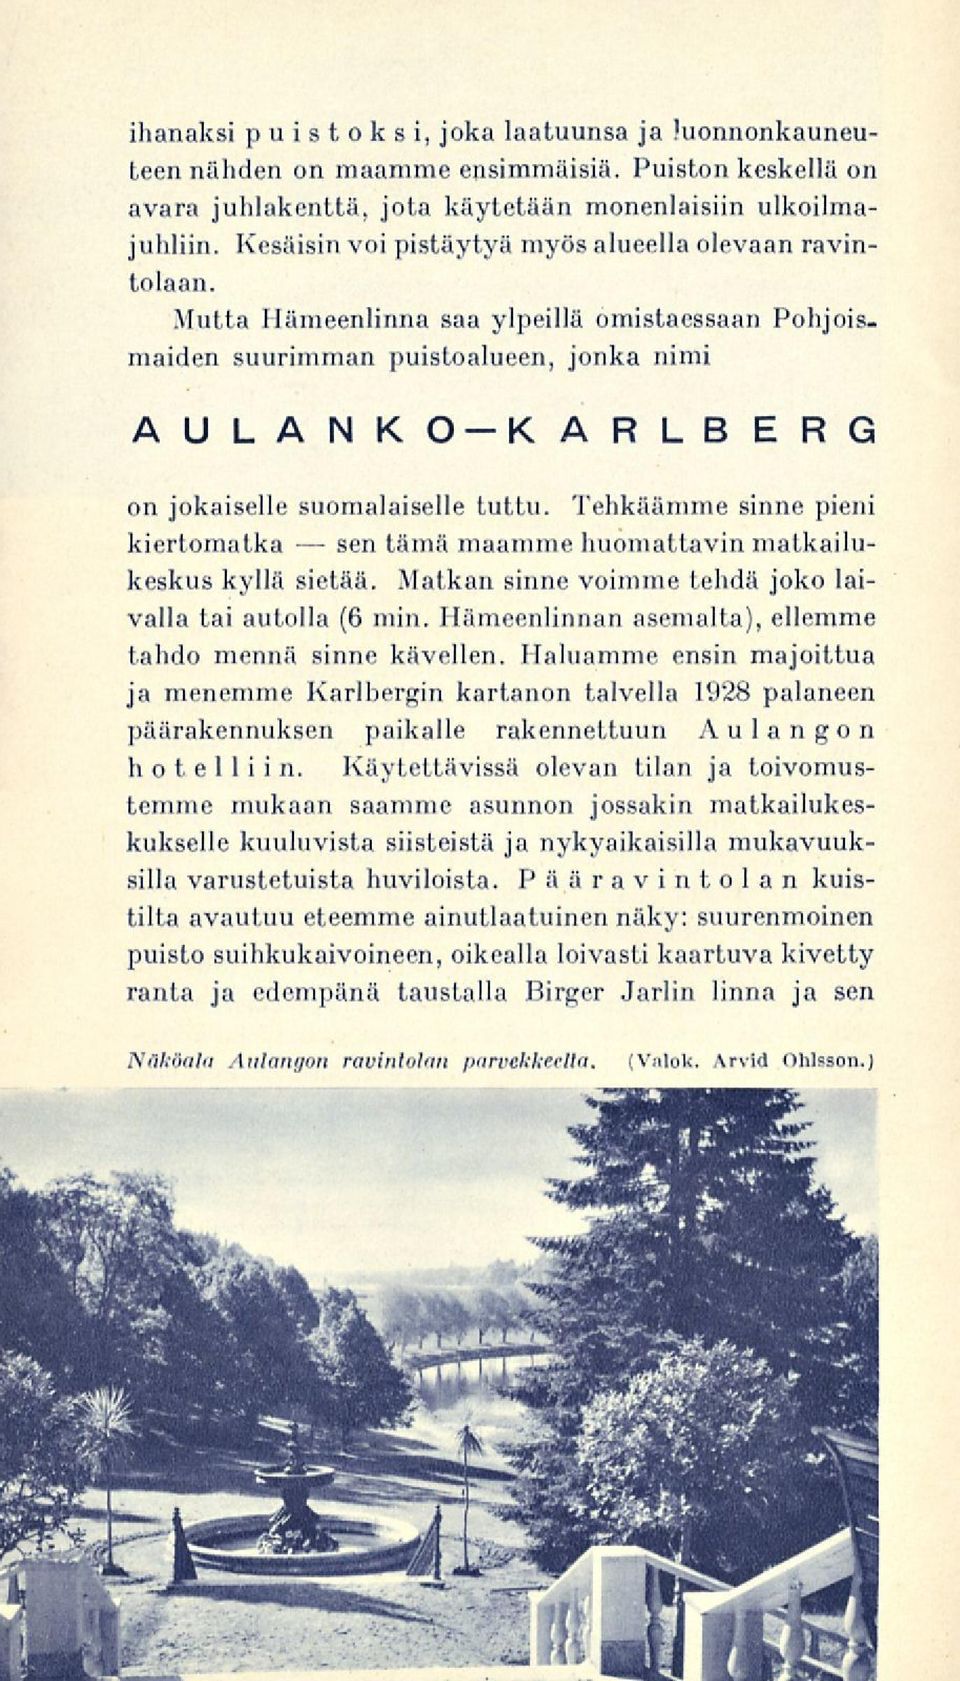 Mutta Hämeenlinna saa ylpeillä omistaessaan Pohjoismaiden suurimman puistoalueen, jonka nimi AULANKO-KARLBERG on jokaiselle suomalaiselle tuttu.